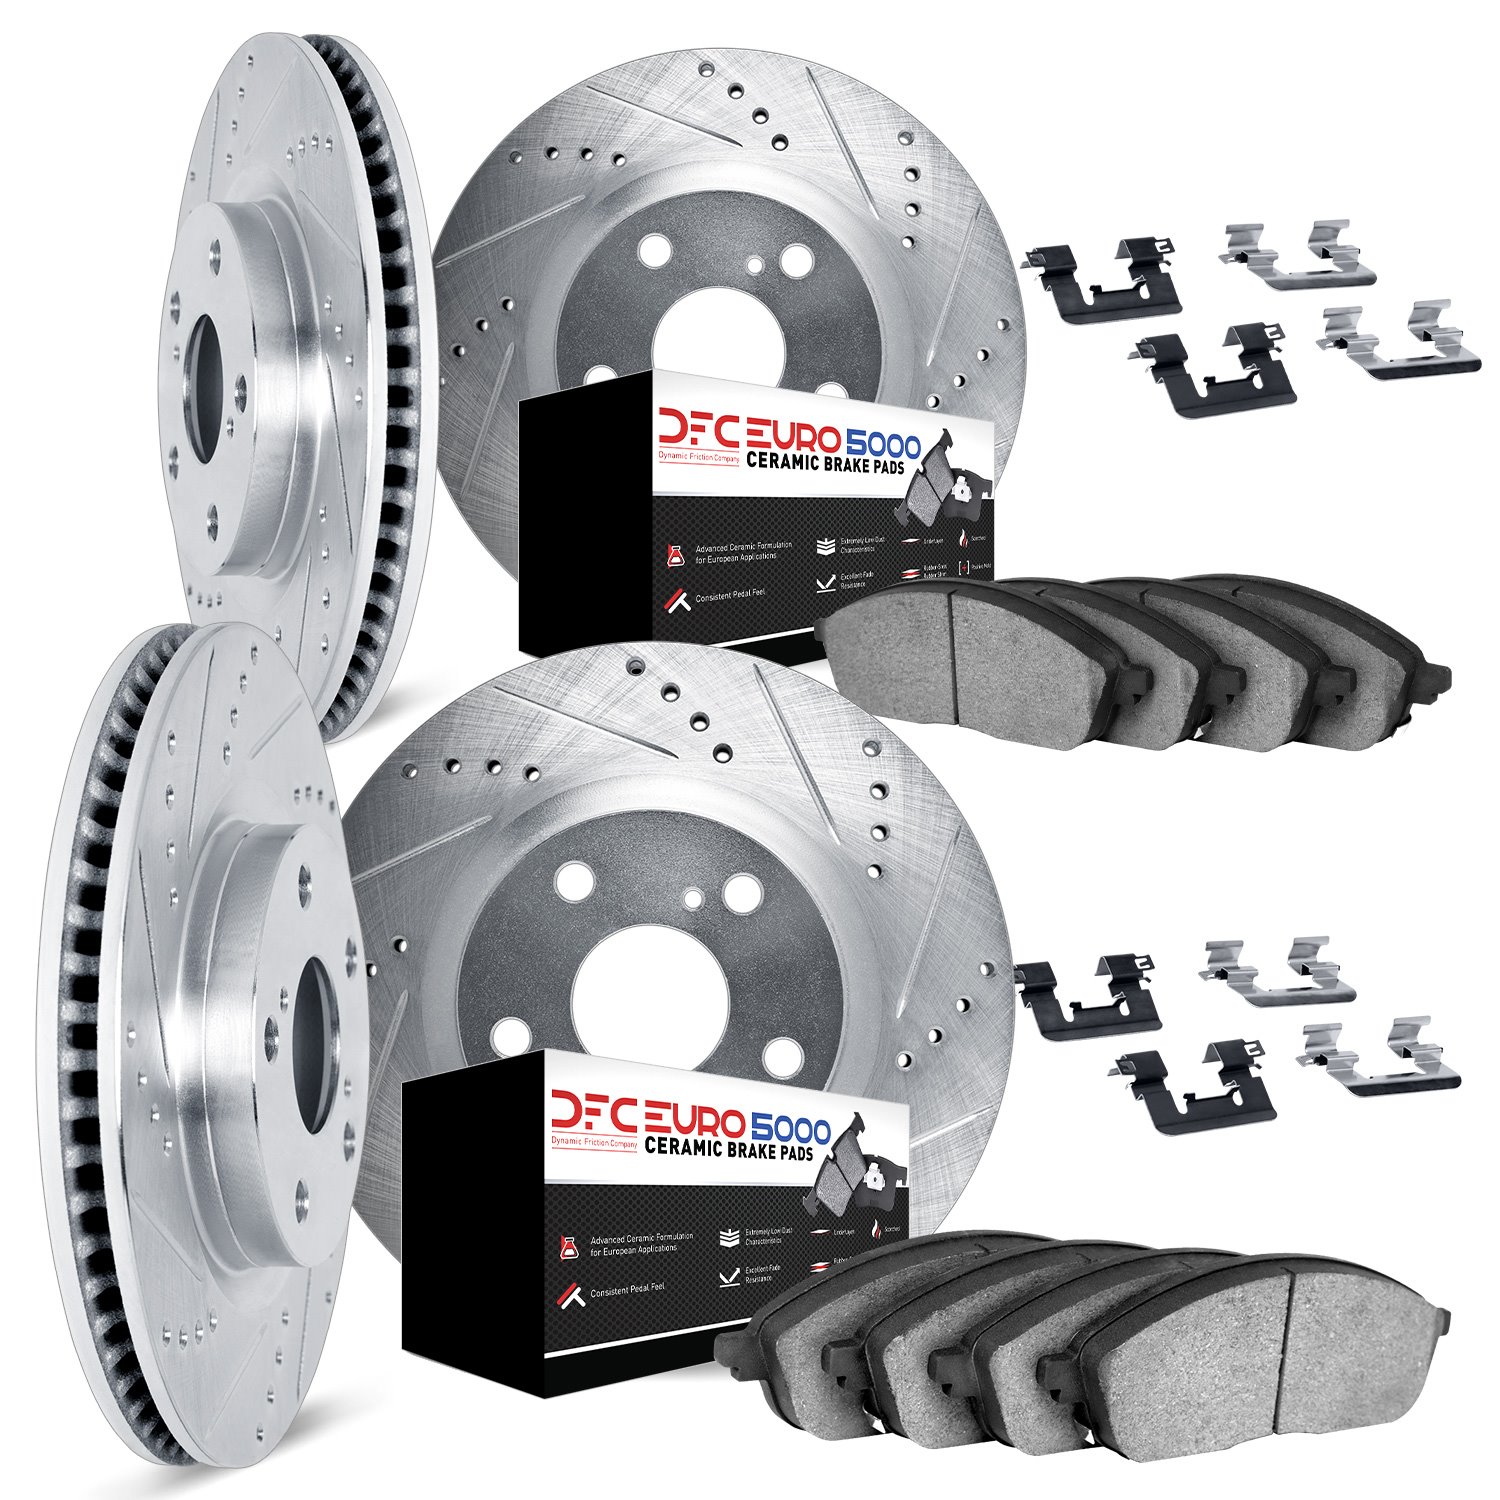 7614-67005 Drilled/Slotted Brake Rotors w/5000 Euro Ceramic Brake Pads Kit & Hardware [Silver], 2005-2014 Infiniti/Nissan, Posit